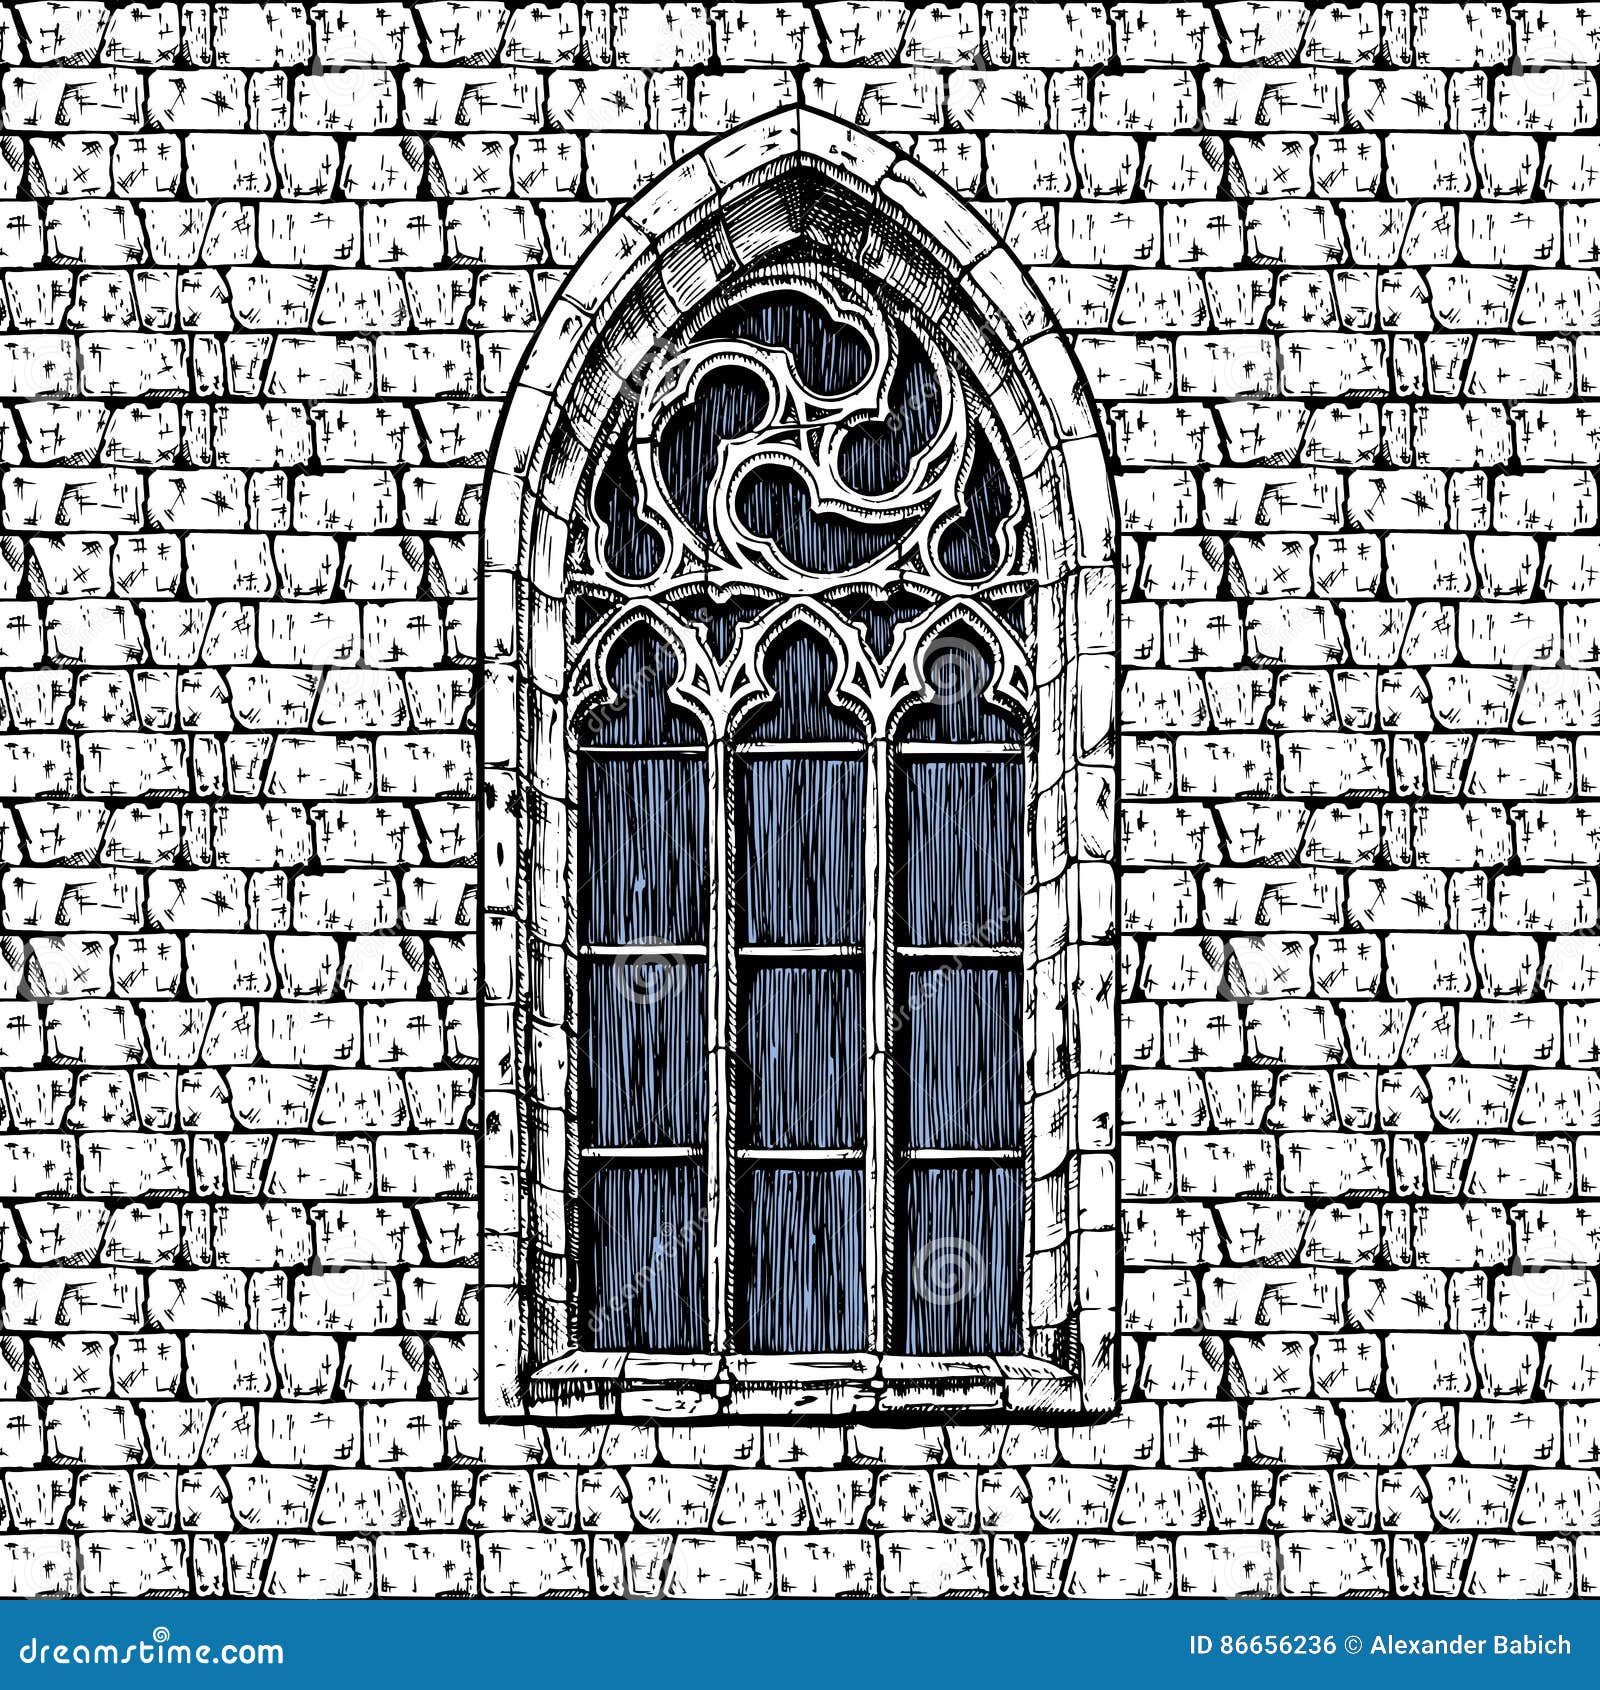 Окно в готическом стиле рисунок